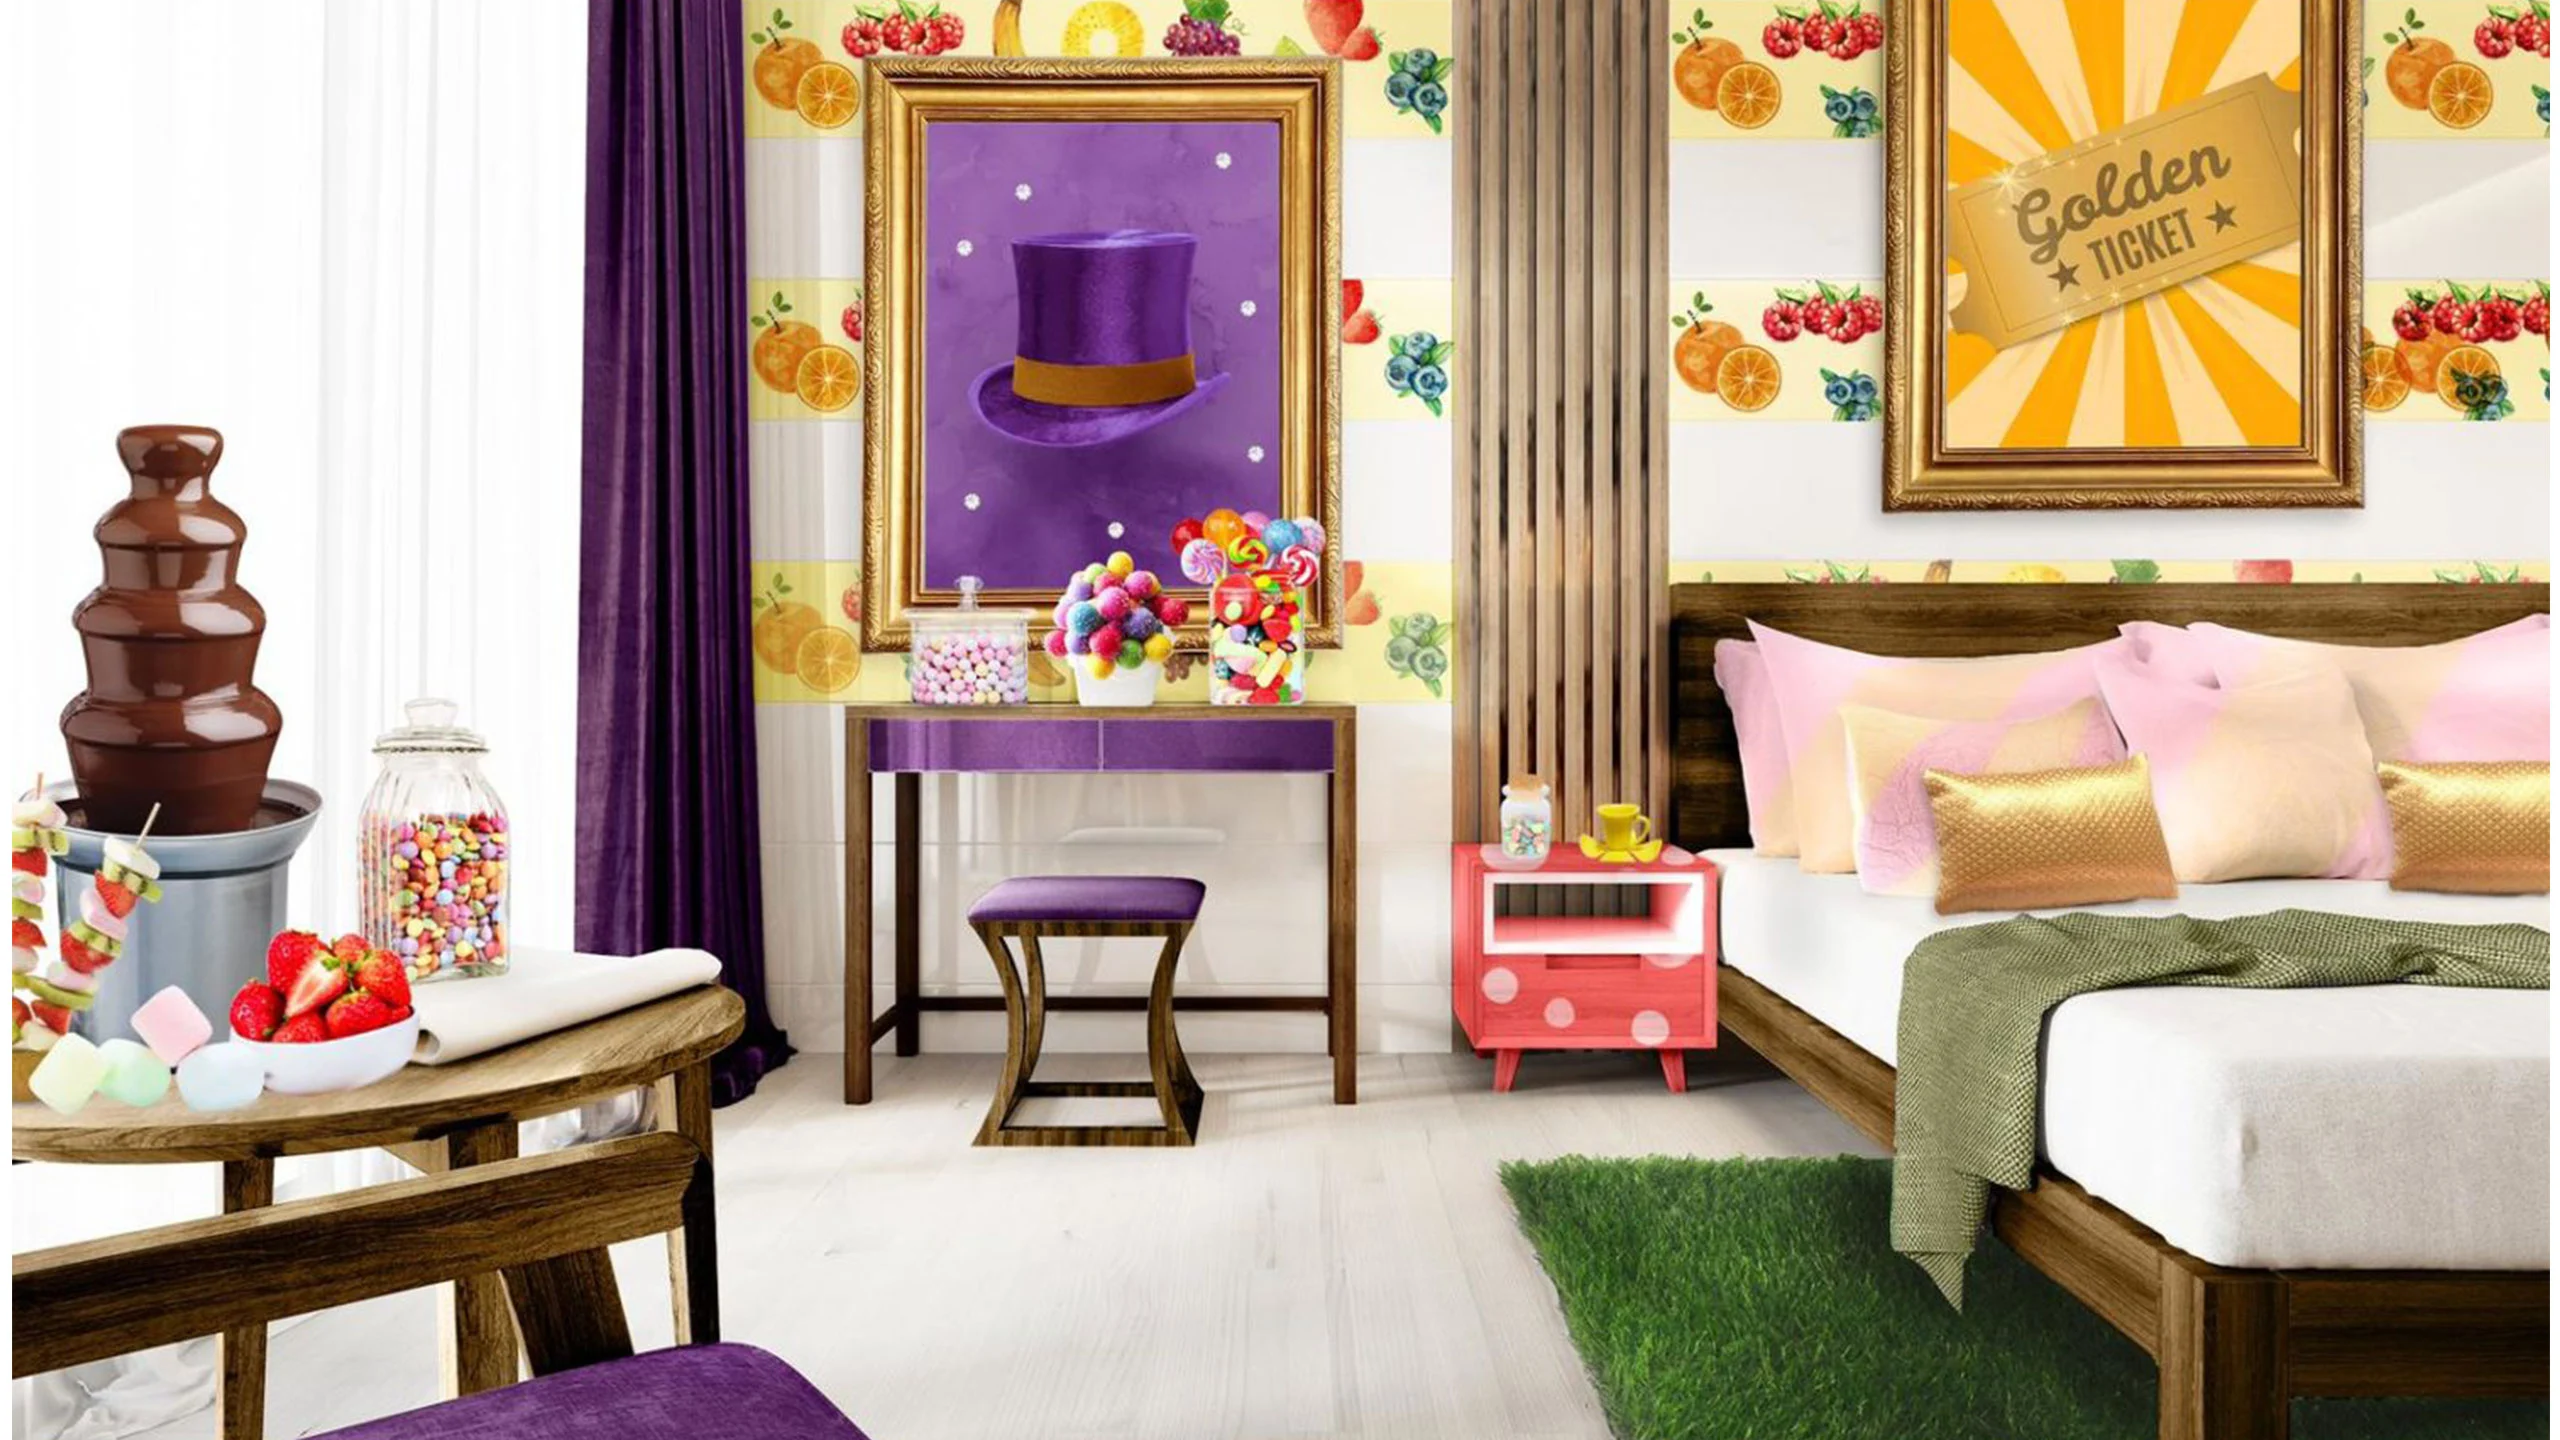 Un hotel dedicado por entero al chocolate acaba de abrir una suite inspirada en Willy Wonka que tienes que probar